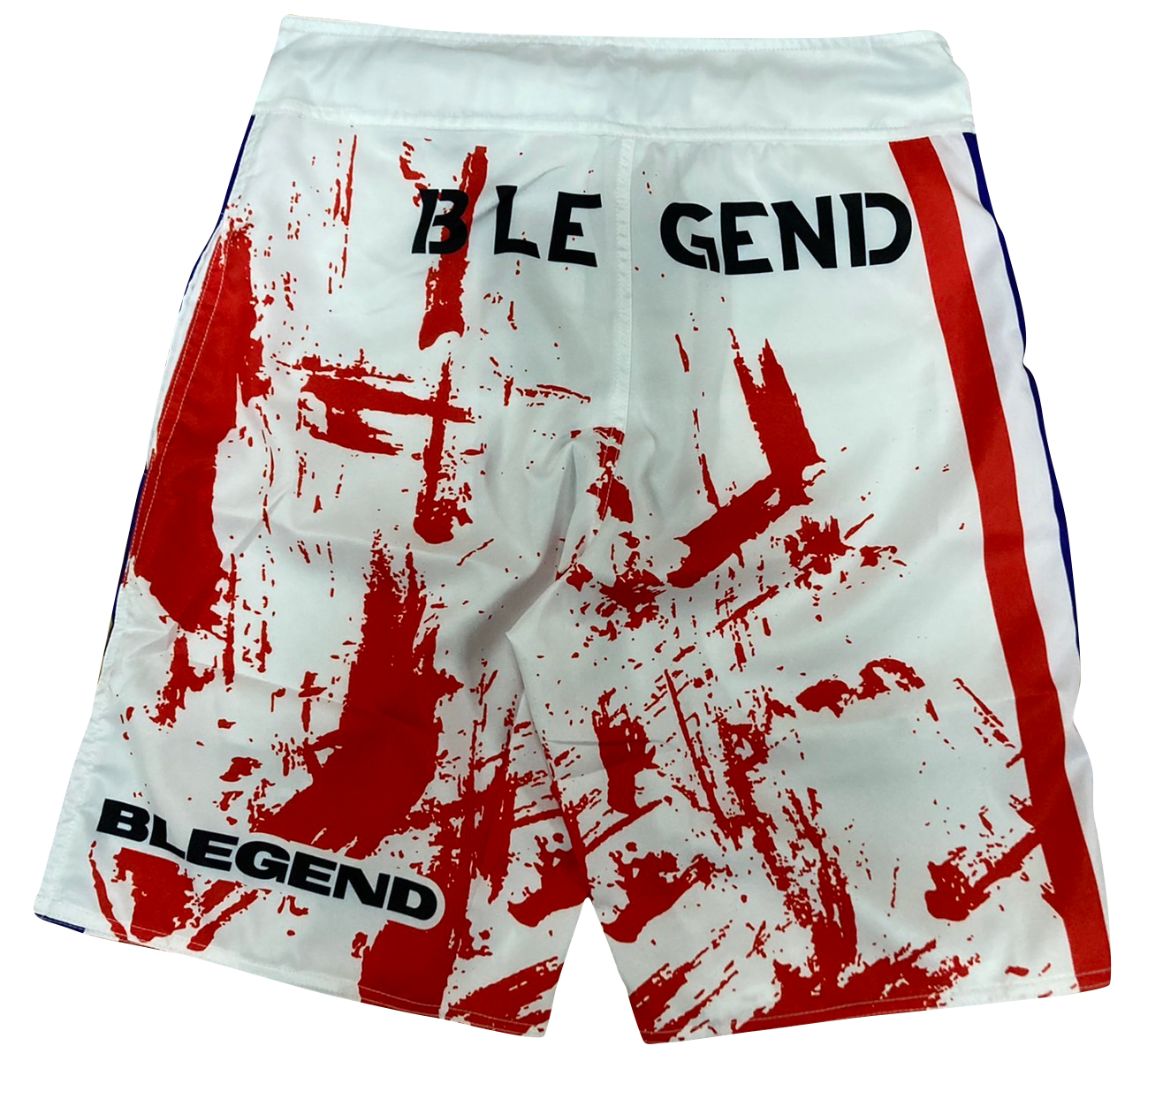 กางเกง Blegend MMA Warrior สีขาว